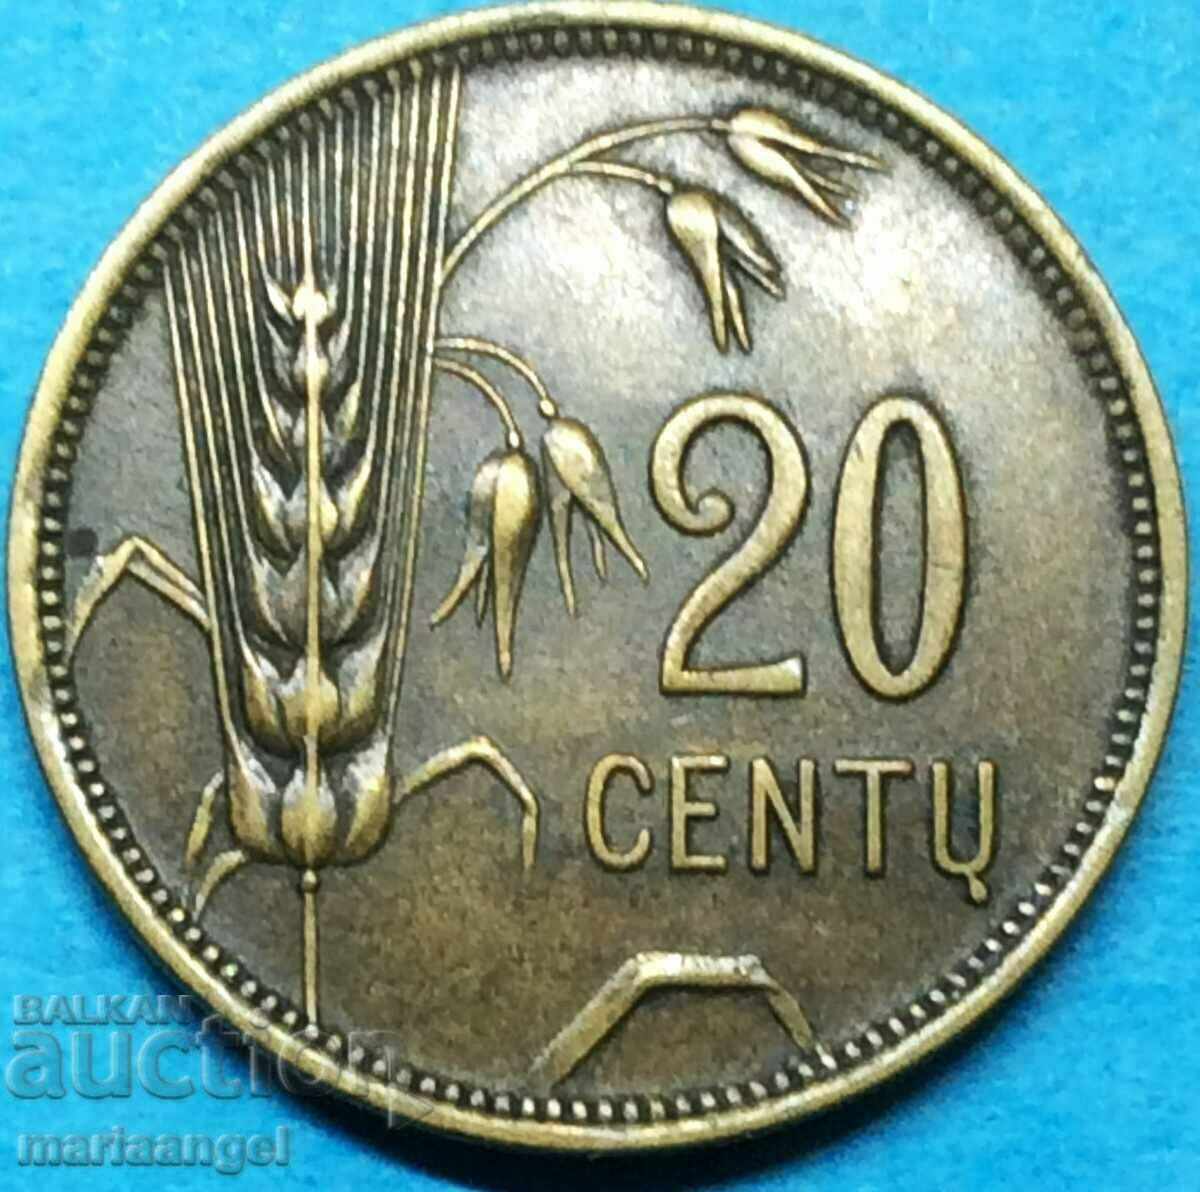 Lithuania 1925 20 cents - rare High Grade